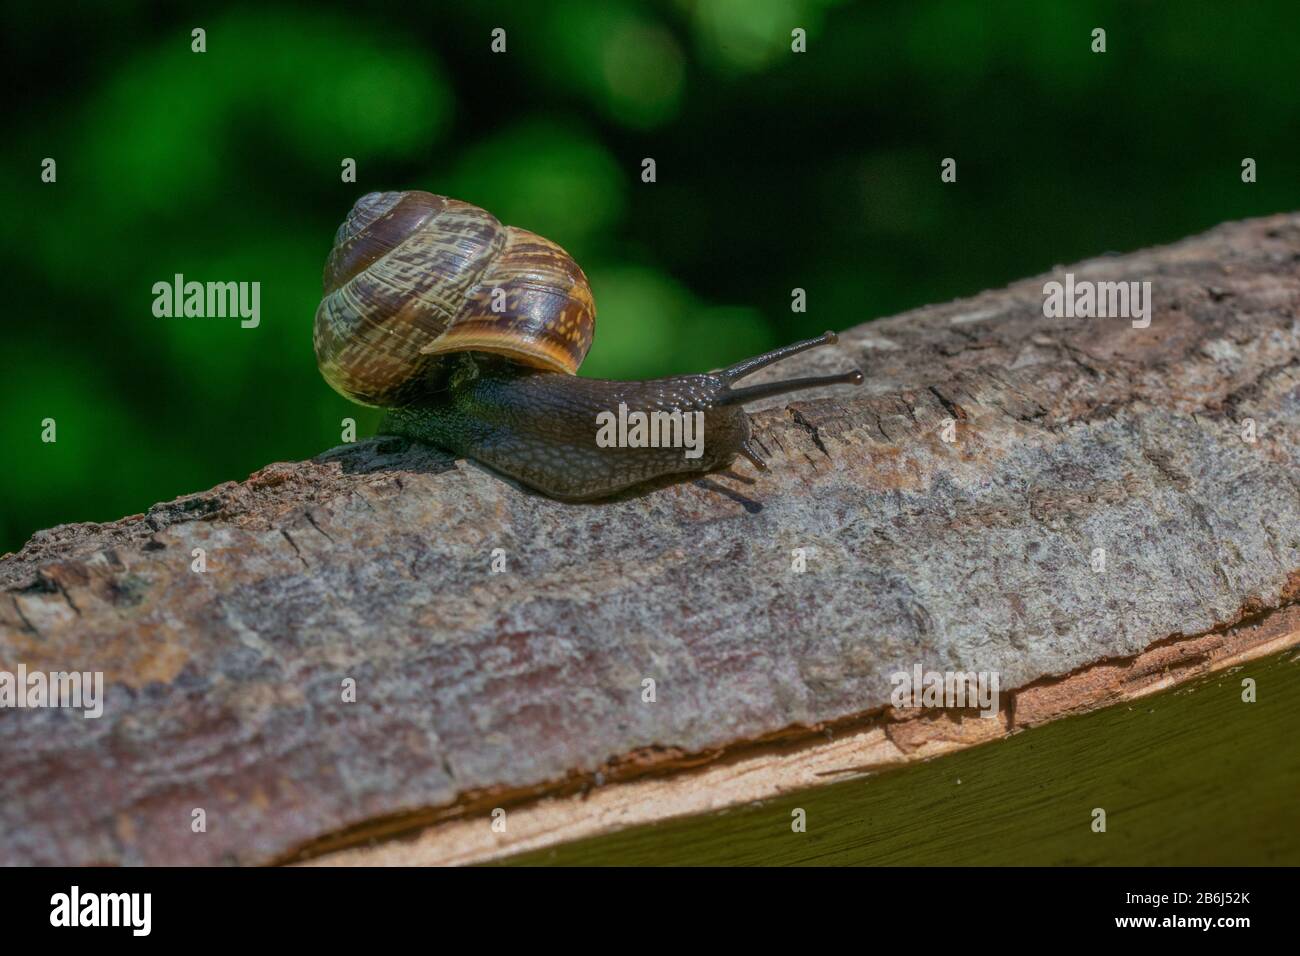 Un petit escargot brun rampant sur bois de bois Banque D'Images